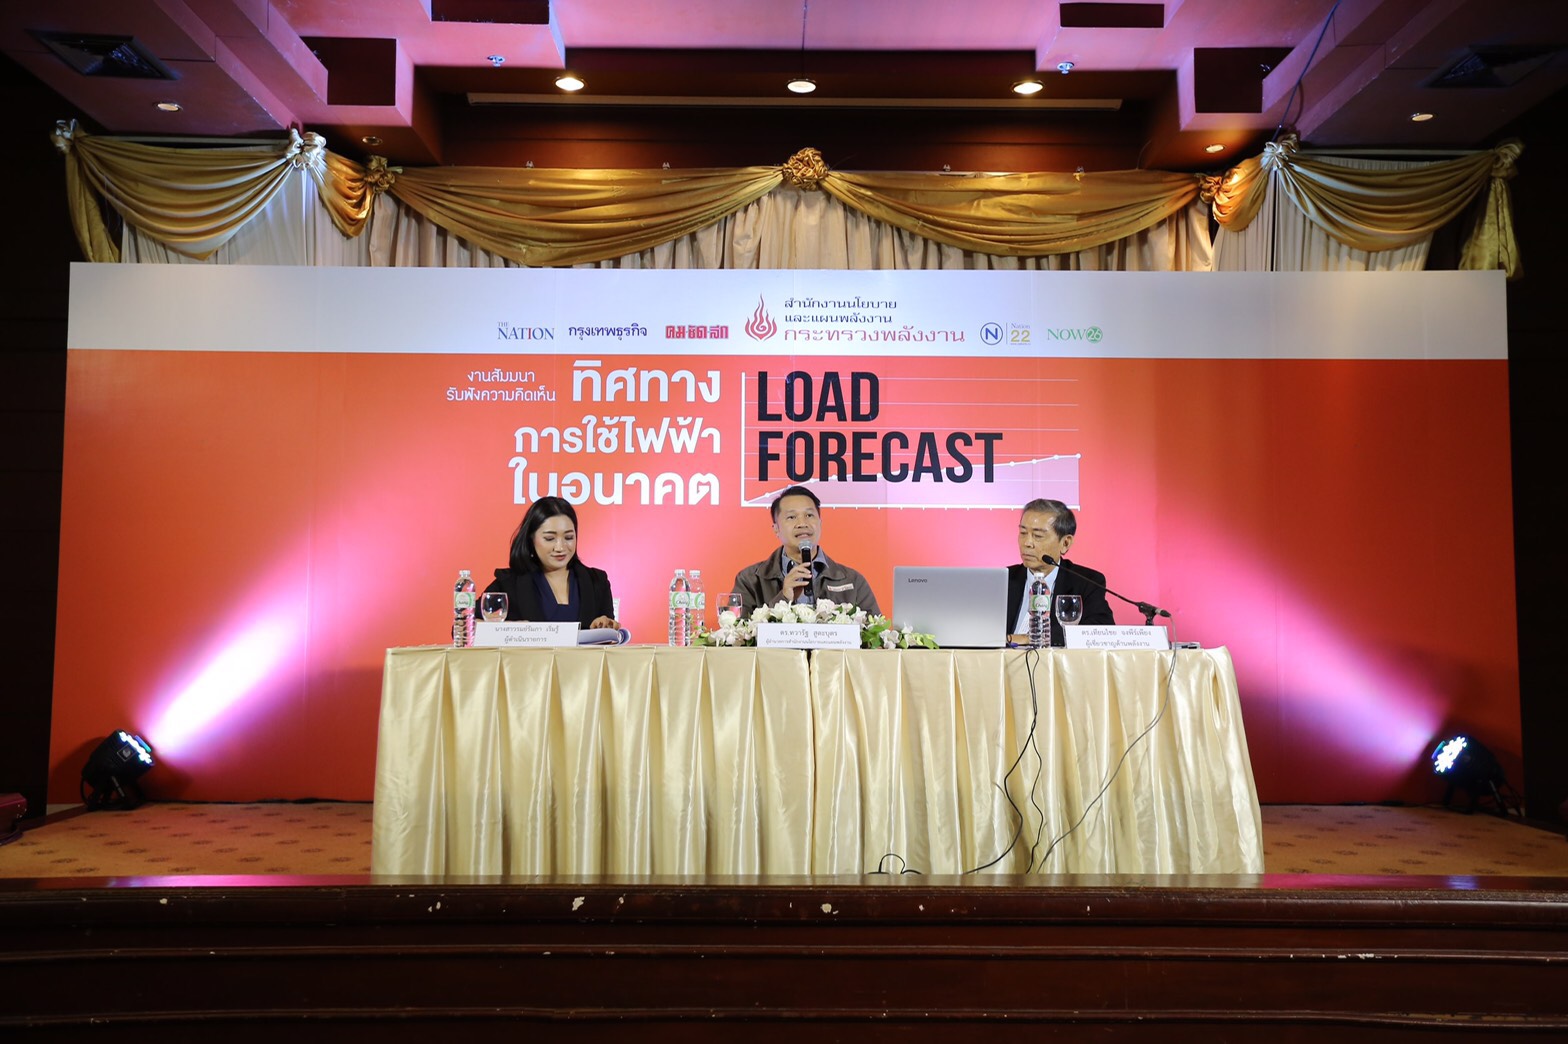 รับฟังความคิดเห็น เรื่อง “ทิศทางการใช้ไฟฟ้าในอนาคต : Load Forecast”